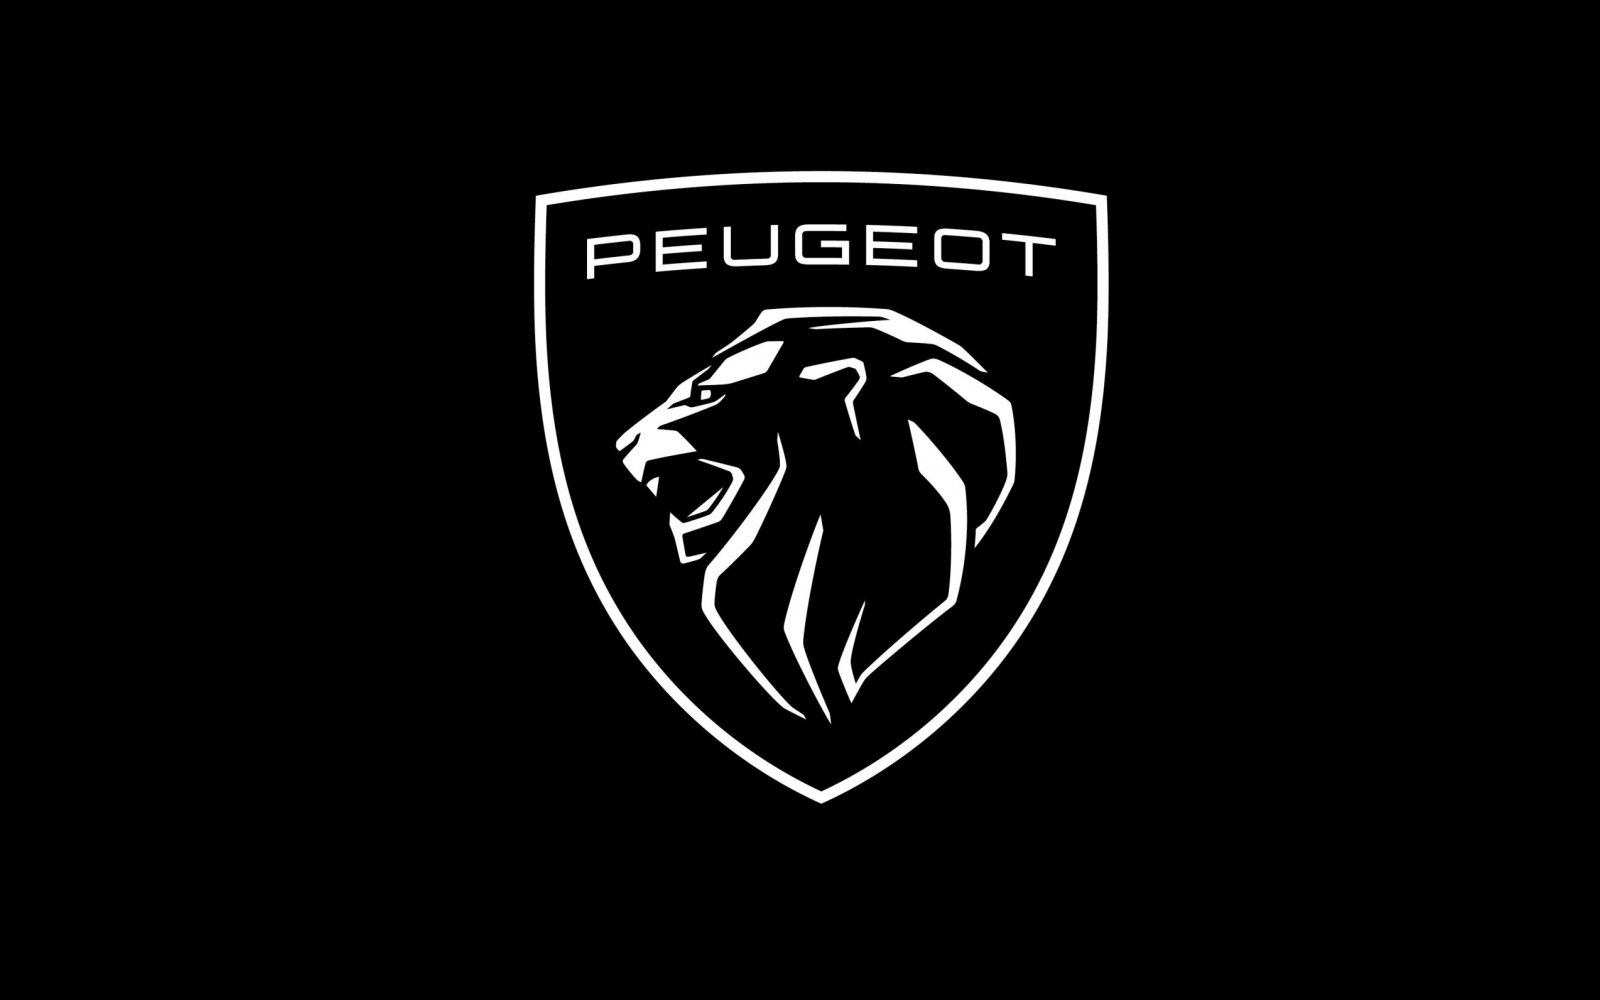 De nieuwe Peugeot-leeuw heeft meer kapsones dan zijn voorganger